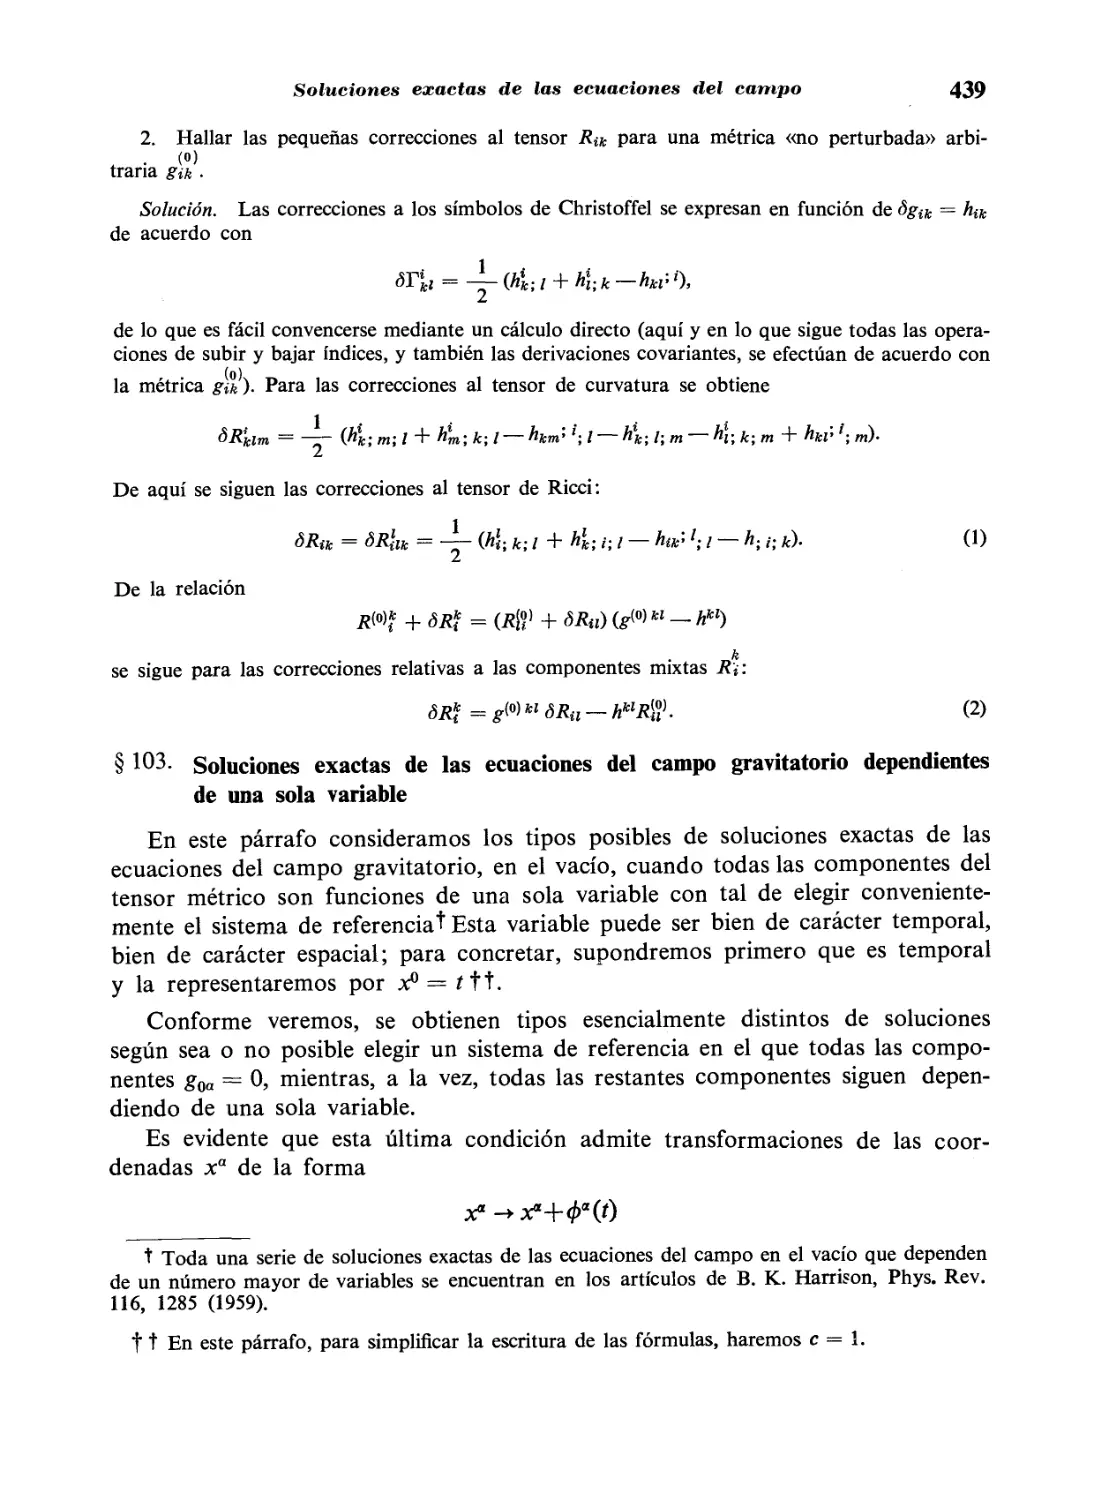 103 Soluciones exactas de las ecuaciones del campo dependientes de una sola variable